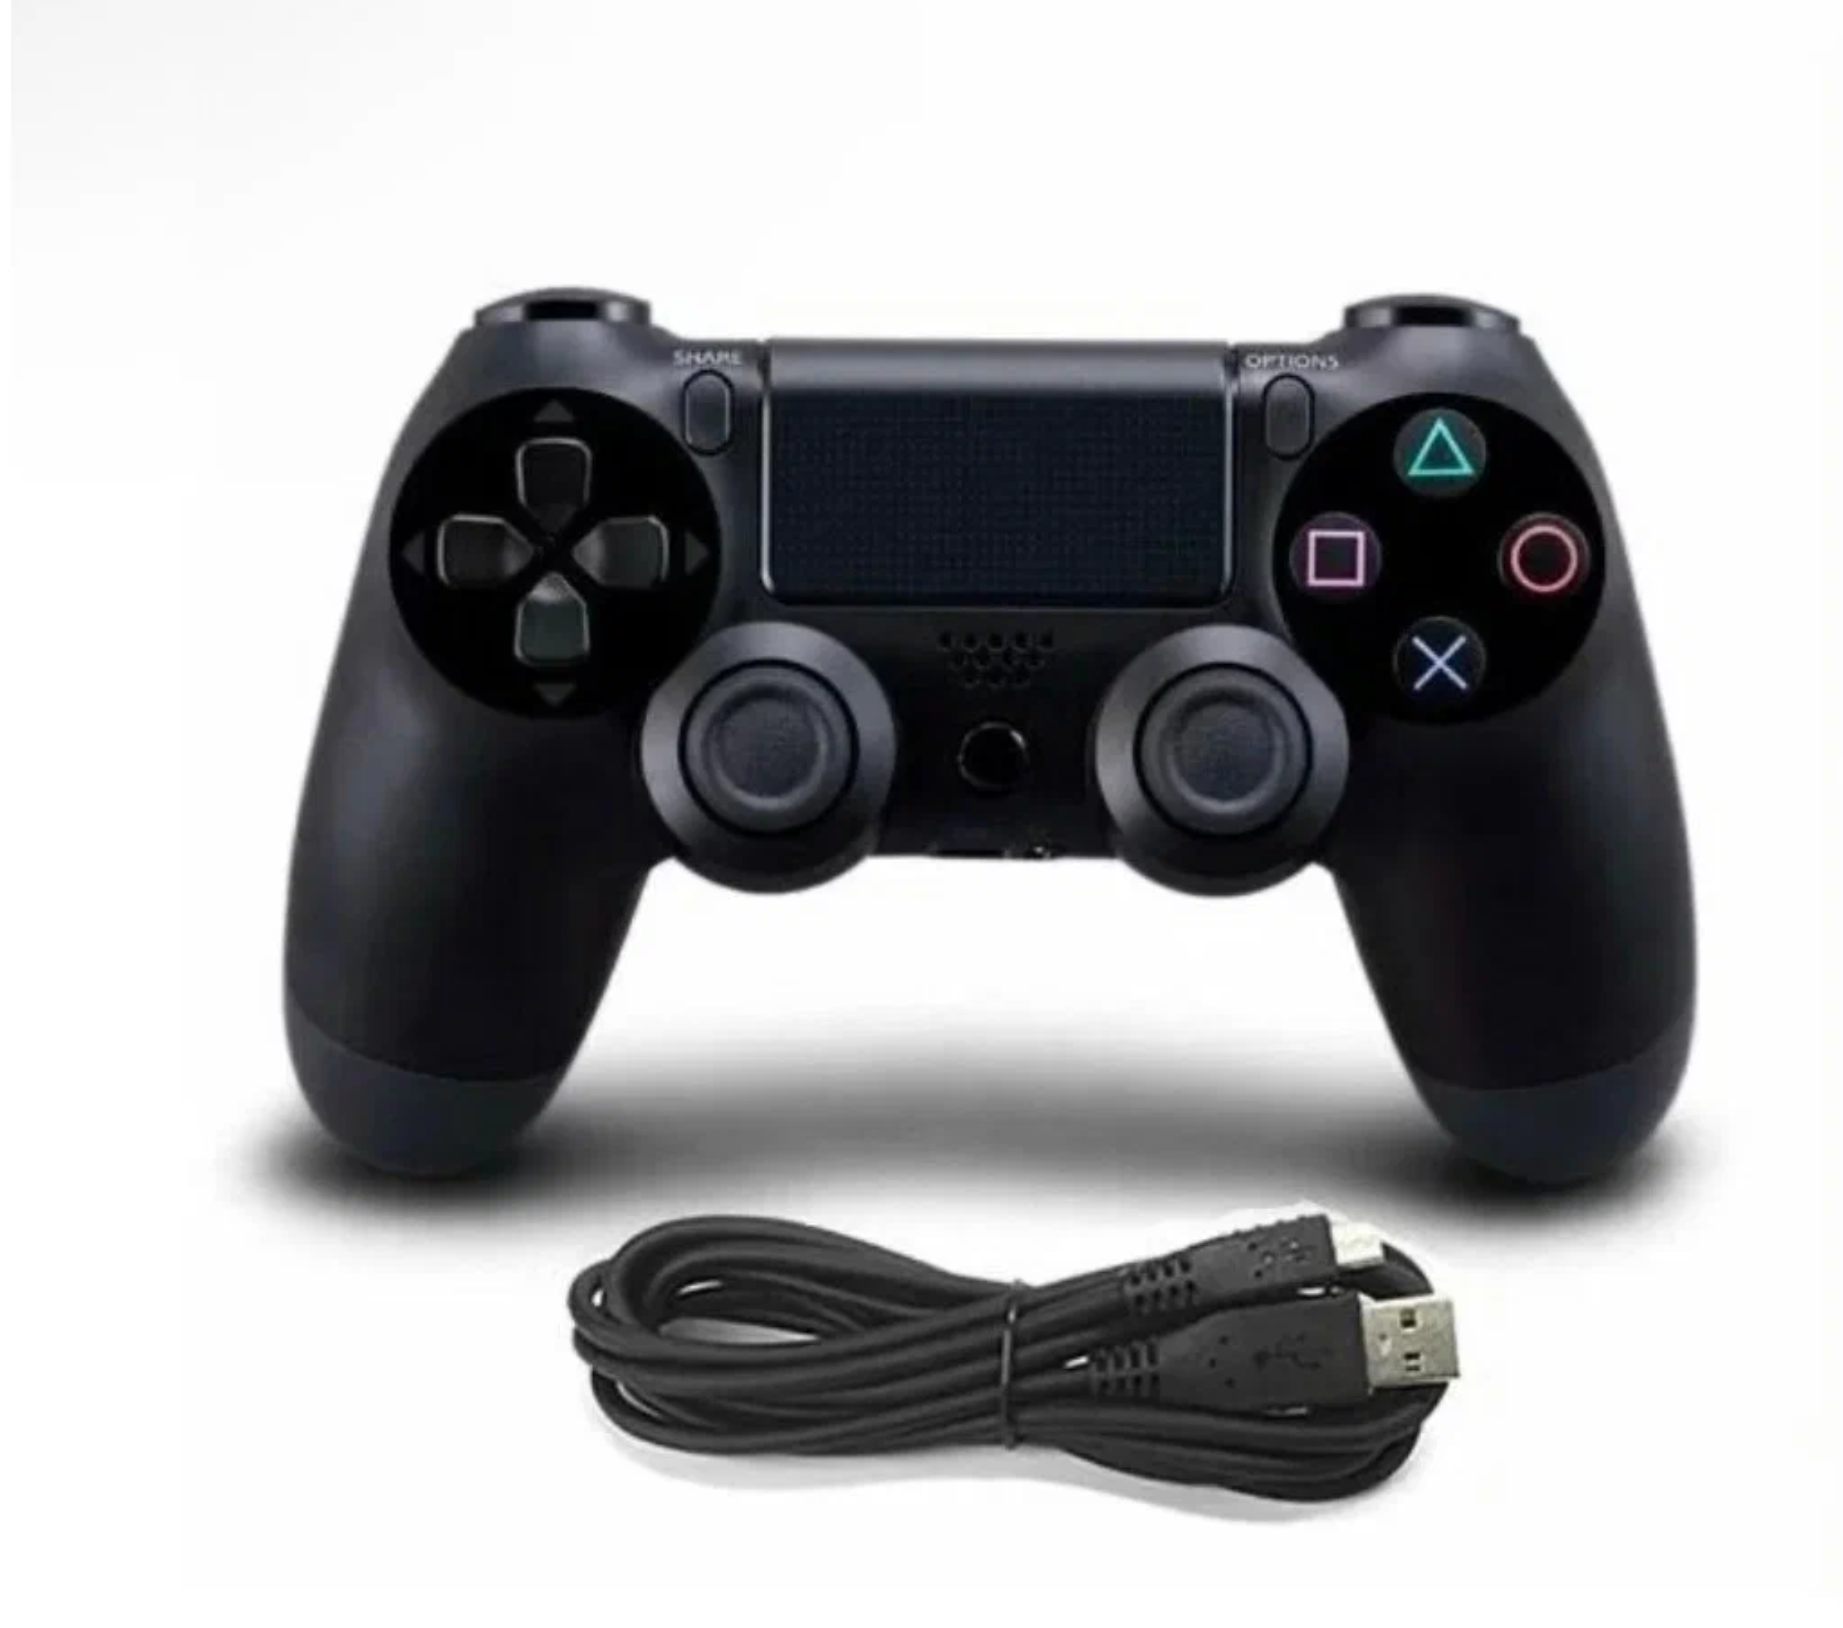 Беспроводной Bluetooth геймпад для PlayStation 4. Джойстик совместимый с PS4, PC и Mac, устройства Apple, устройства Android